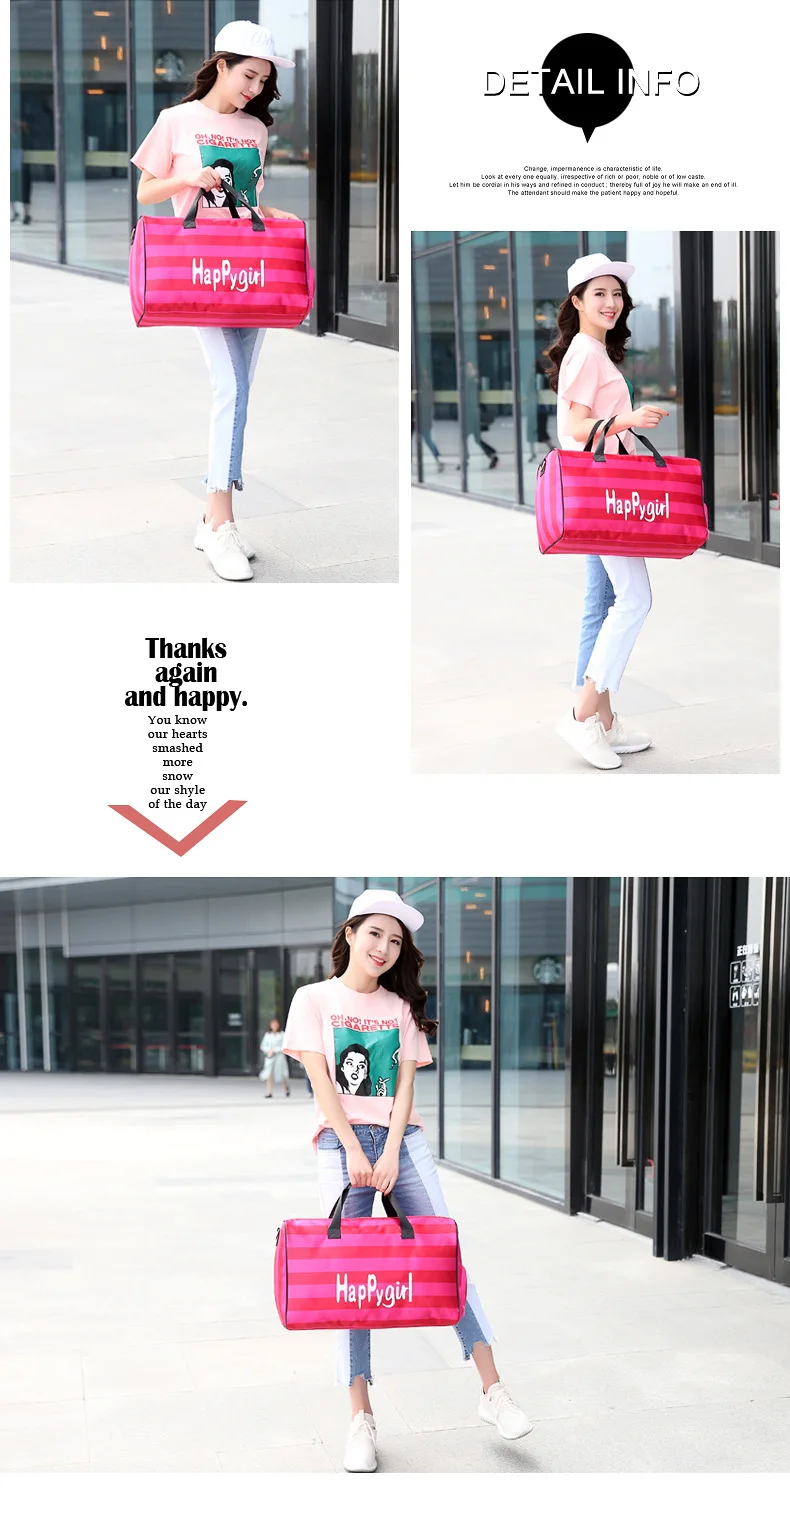 Женская дорожная сумка в Корейском стиле дорожная сумка для девочки багажная сумка новая сумка Bolsa Feminina